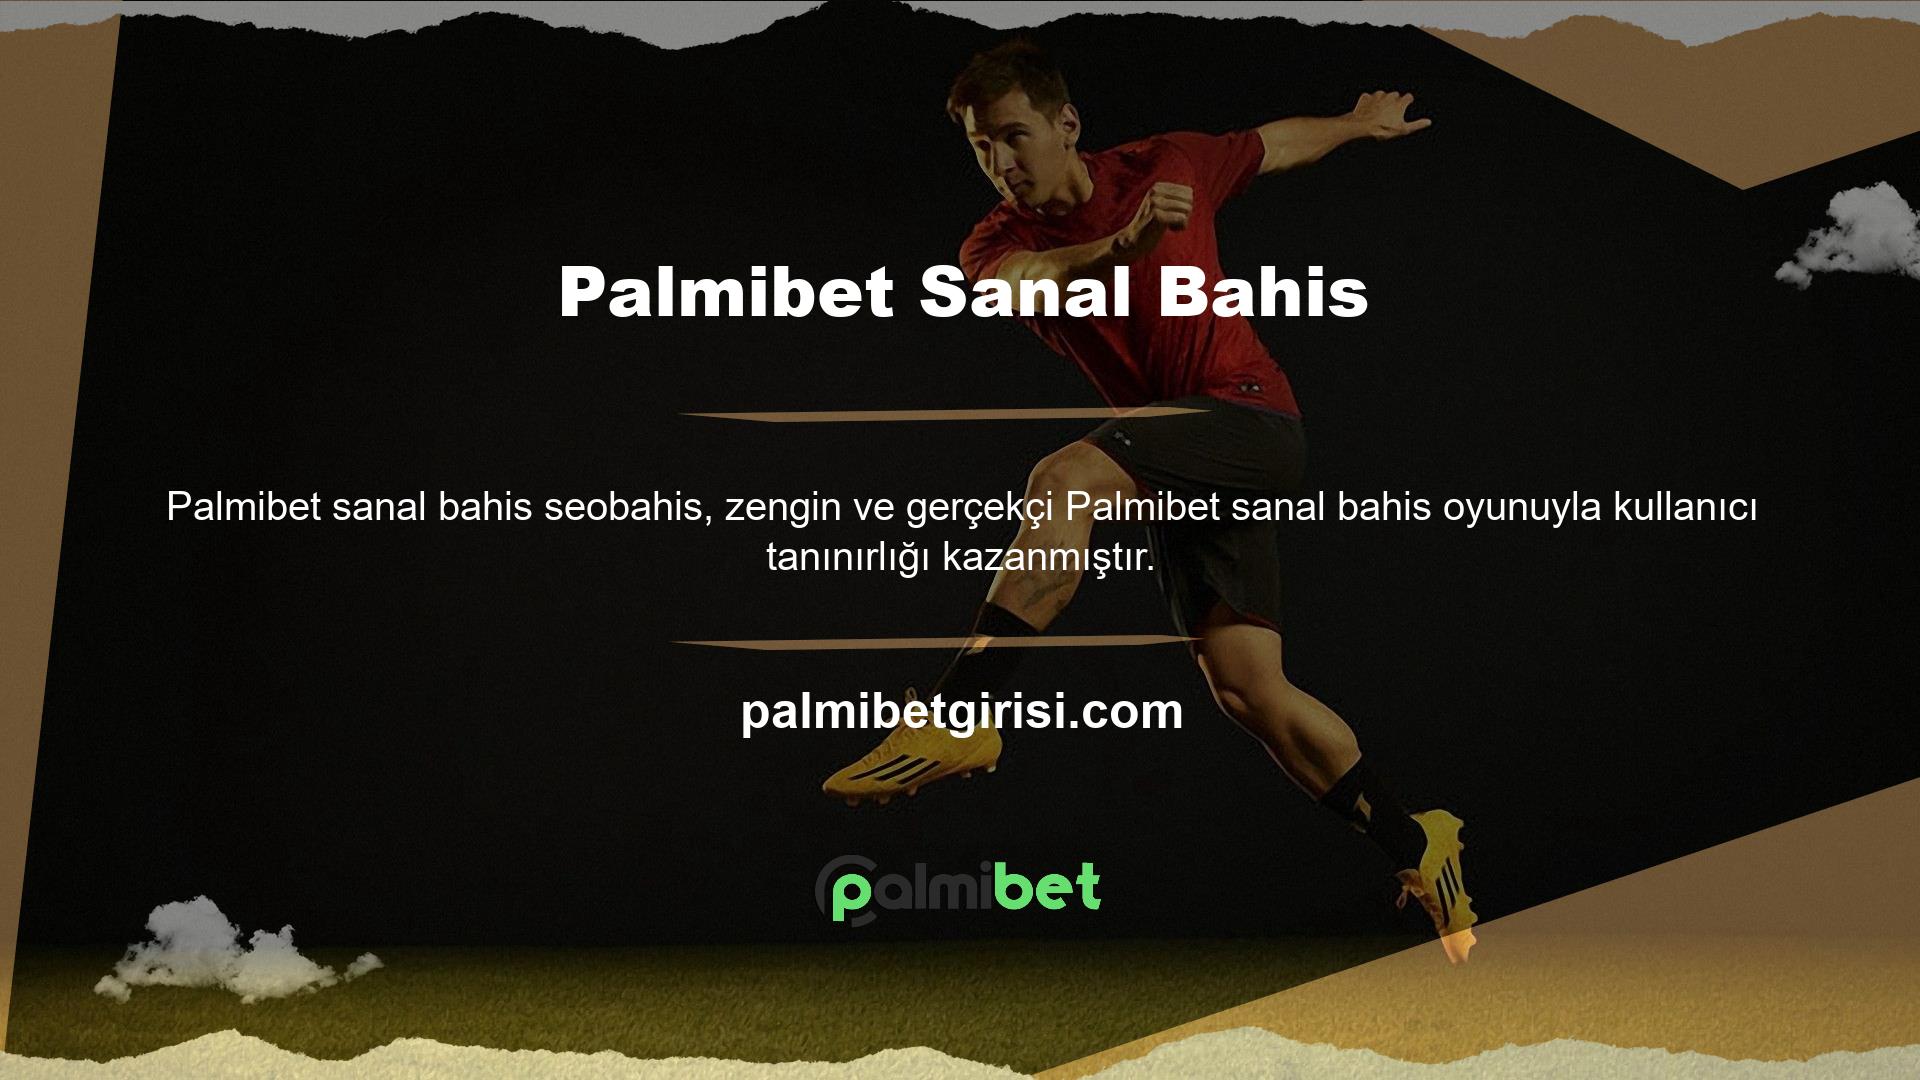 Bahisçiler arasında oldukça popüler olan sanal piyango oyunu, Palmibet güçlü altyapısı ile sorunsuz bir şekilde çalışmaktadır